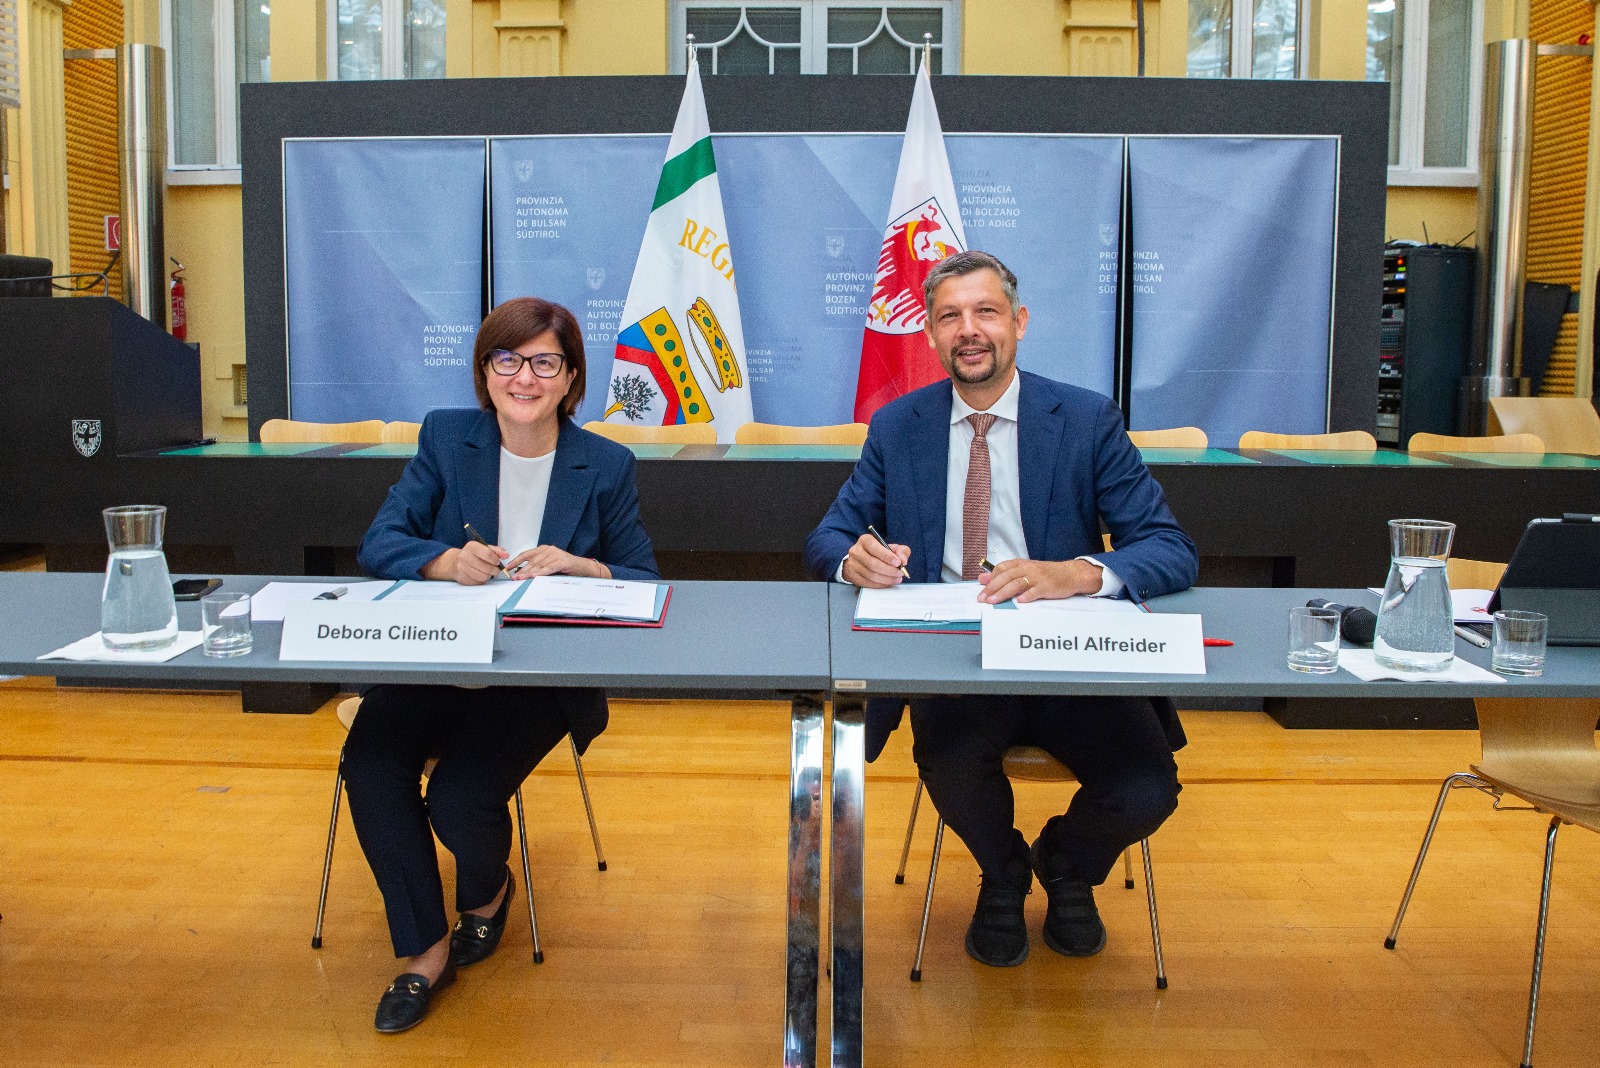 Galleria Puglia e Alto Adige firmano un accordo per la promozione dell’uso dell’idrogeno nel settore trasporti e della transizione ecologica - Diapositiva 3 di 9